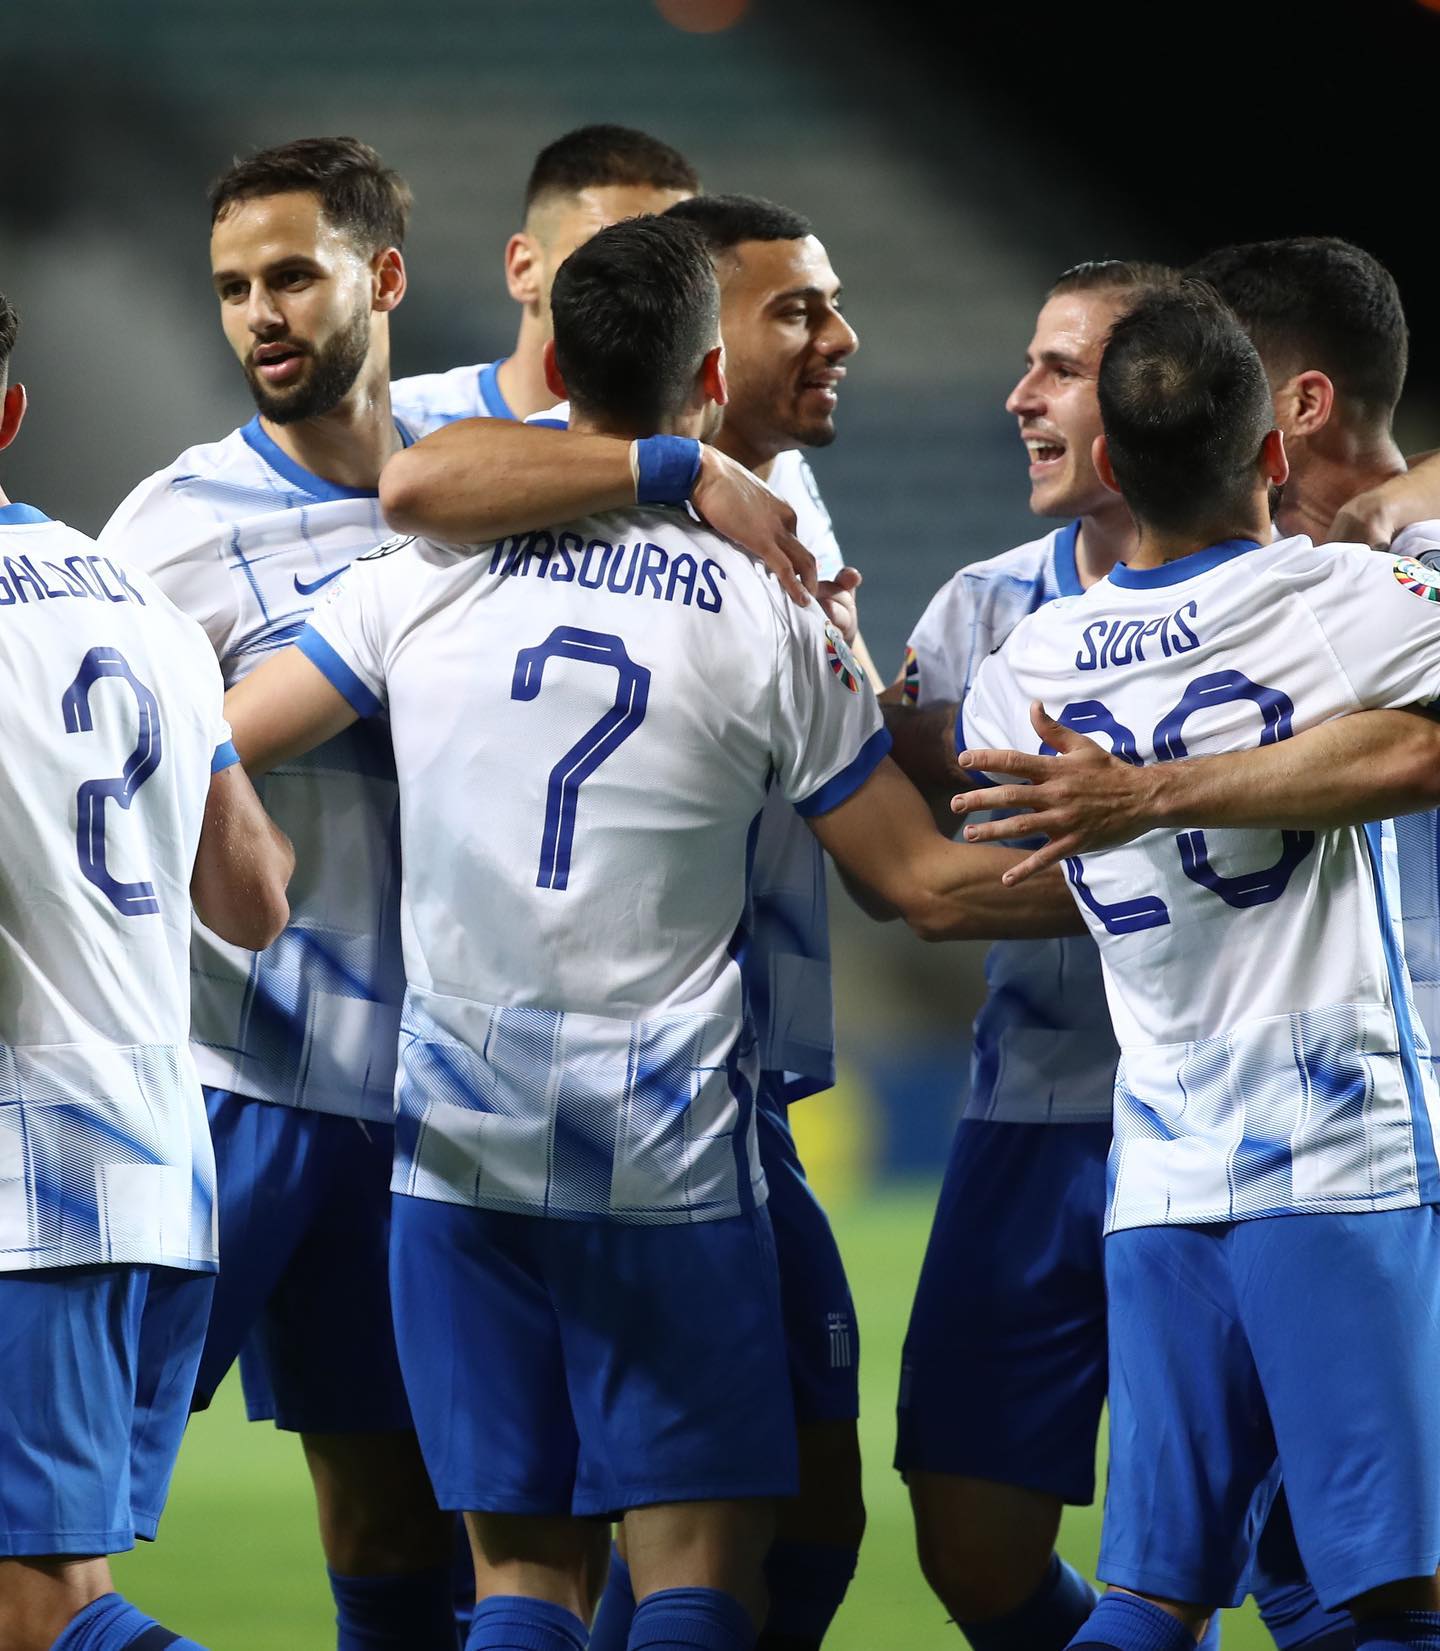 ΑΠΟΨΕ το κρίσιμο ματς της Εθνικής Ελλάδας με το Καζακστάν (21:45) (ΒΙΝΤΕΟ)